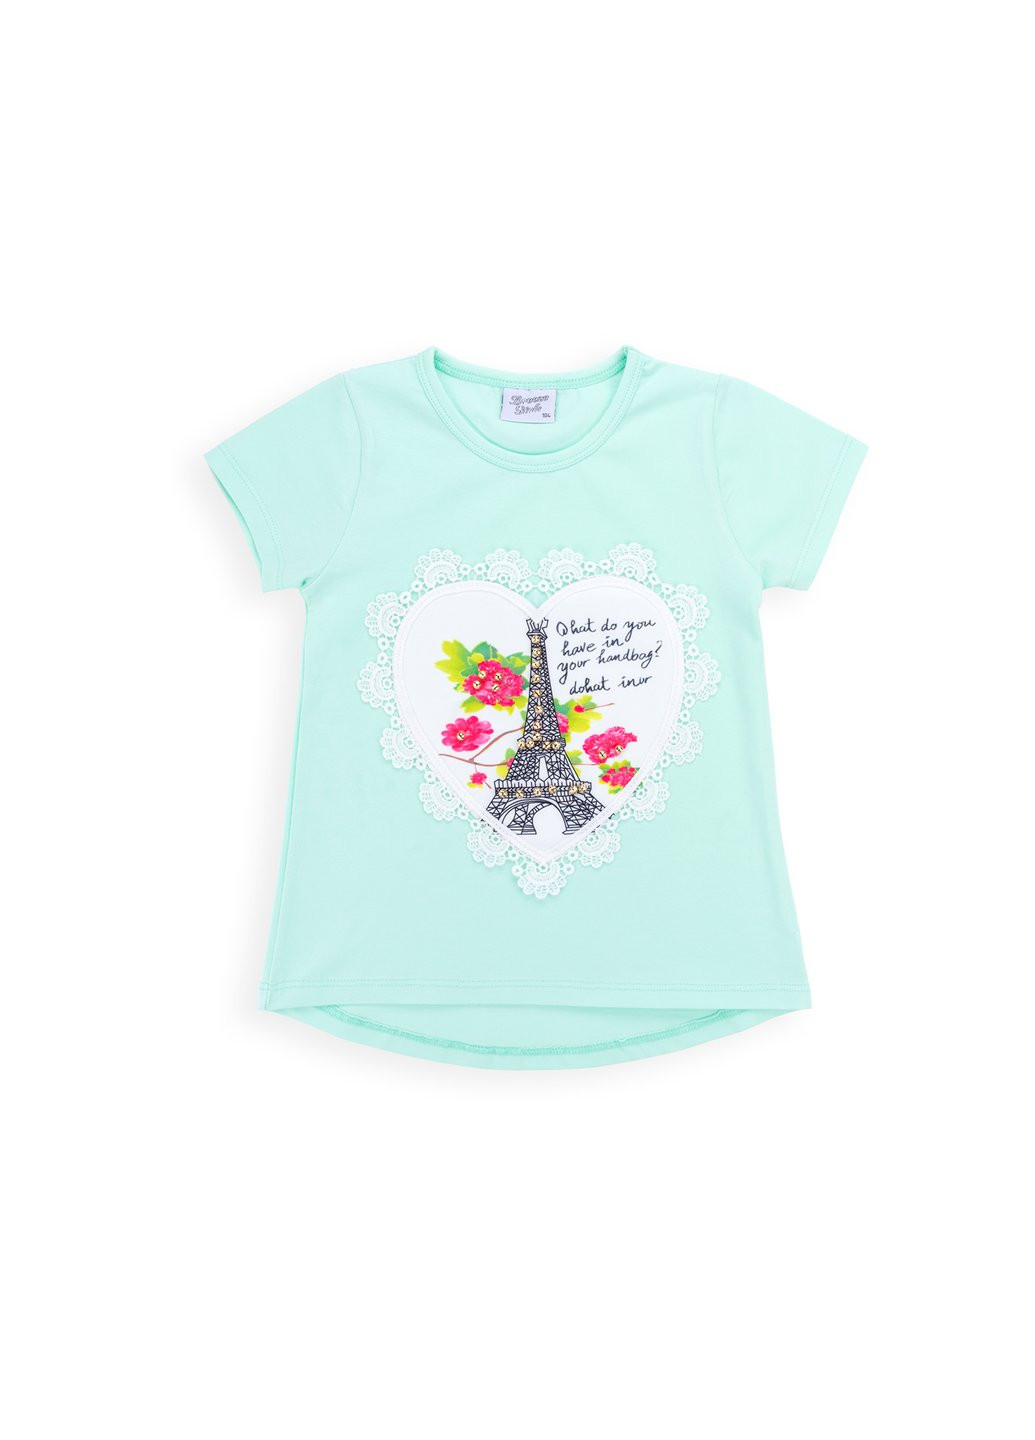 Комбинированная футболка детская с башней (8326-128g-mint) Breeze